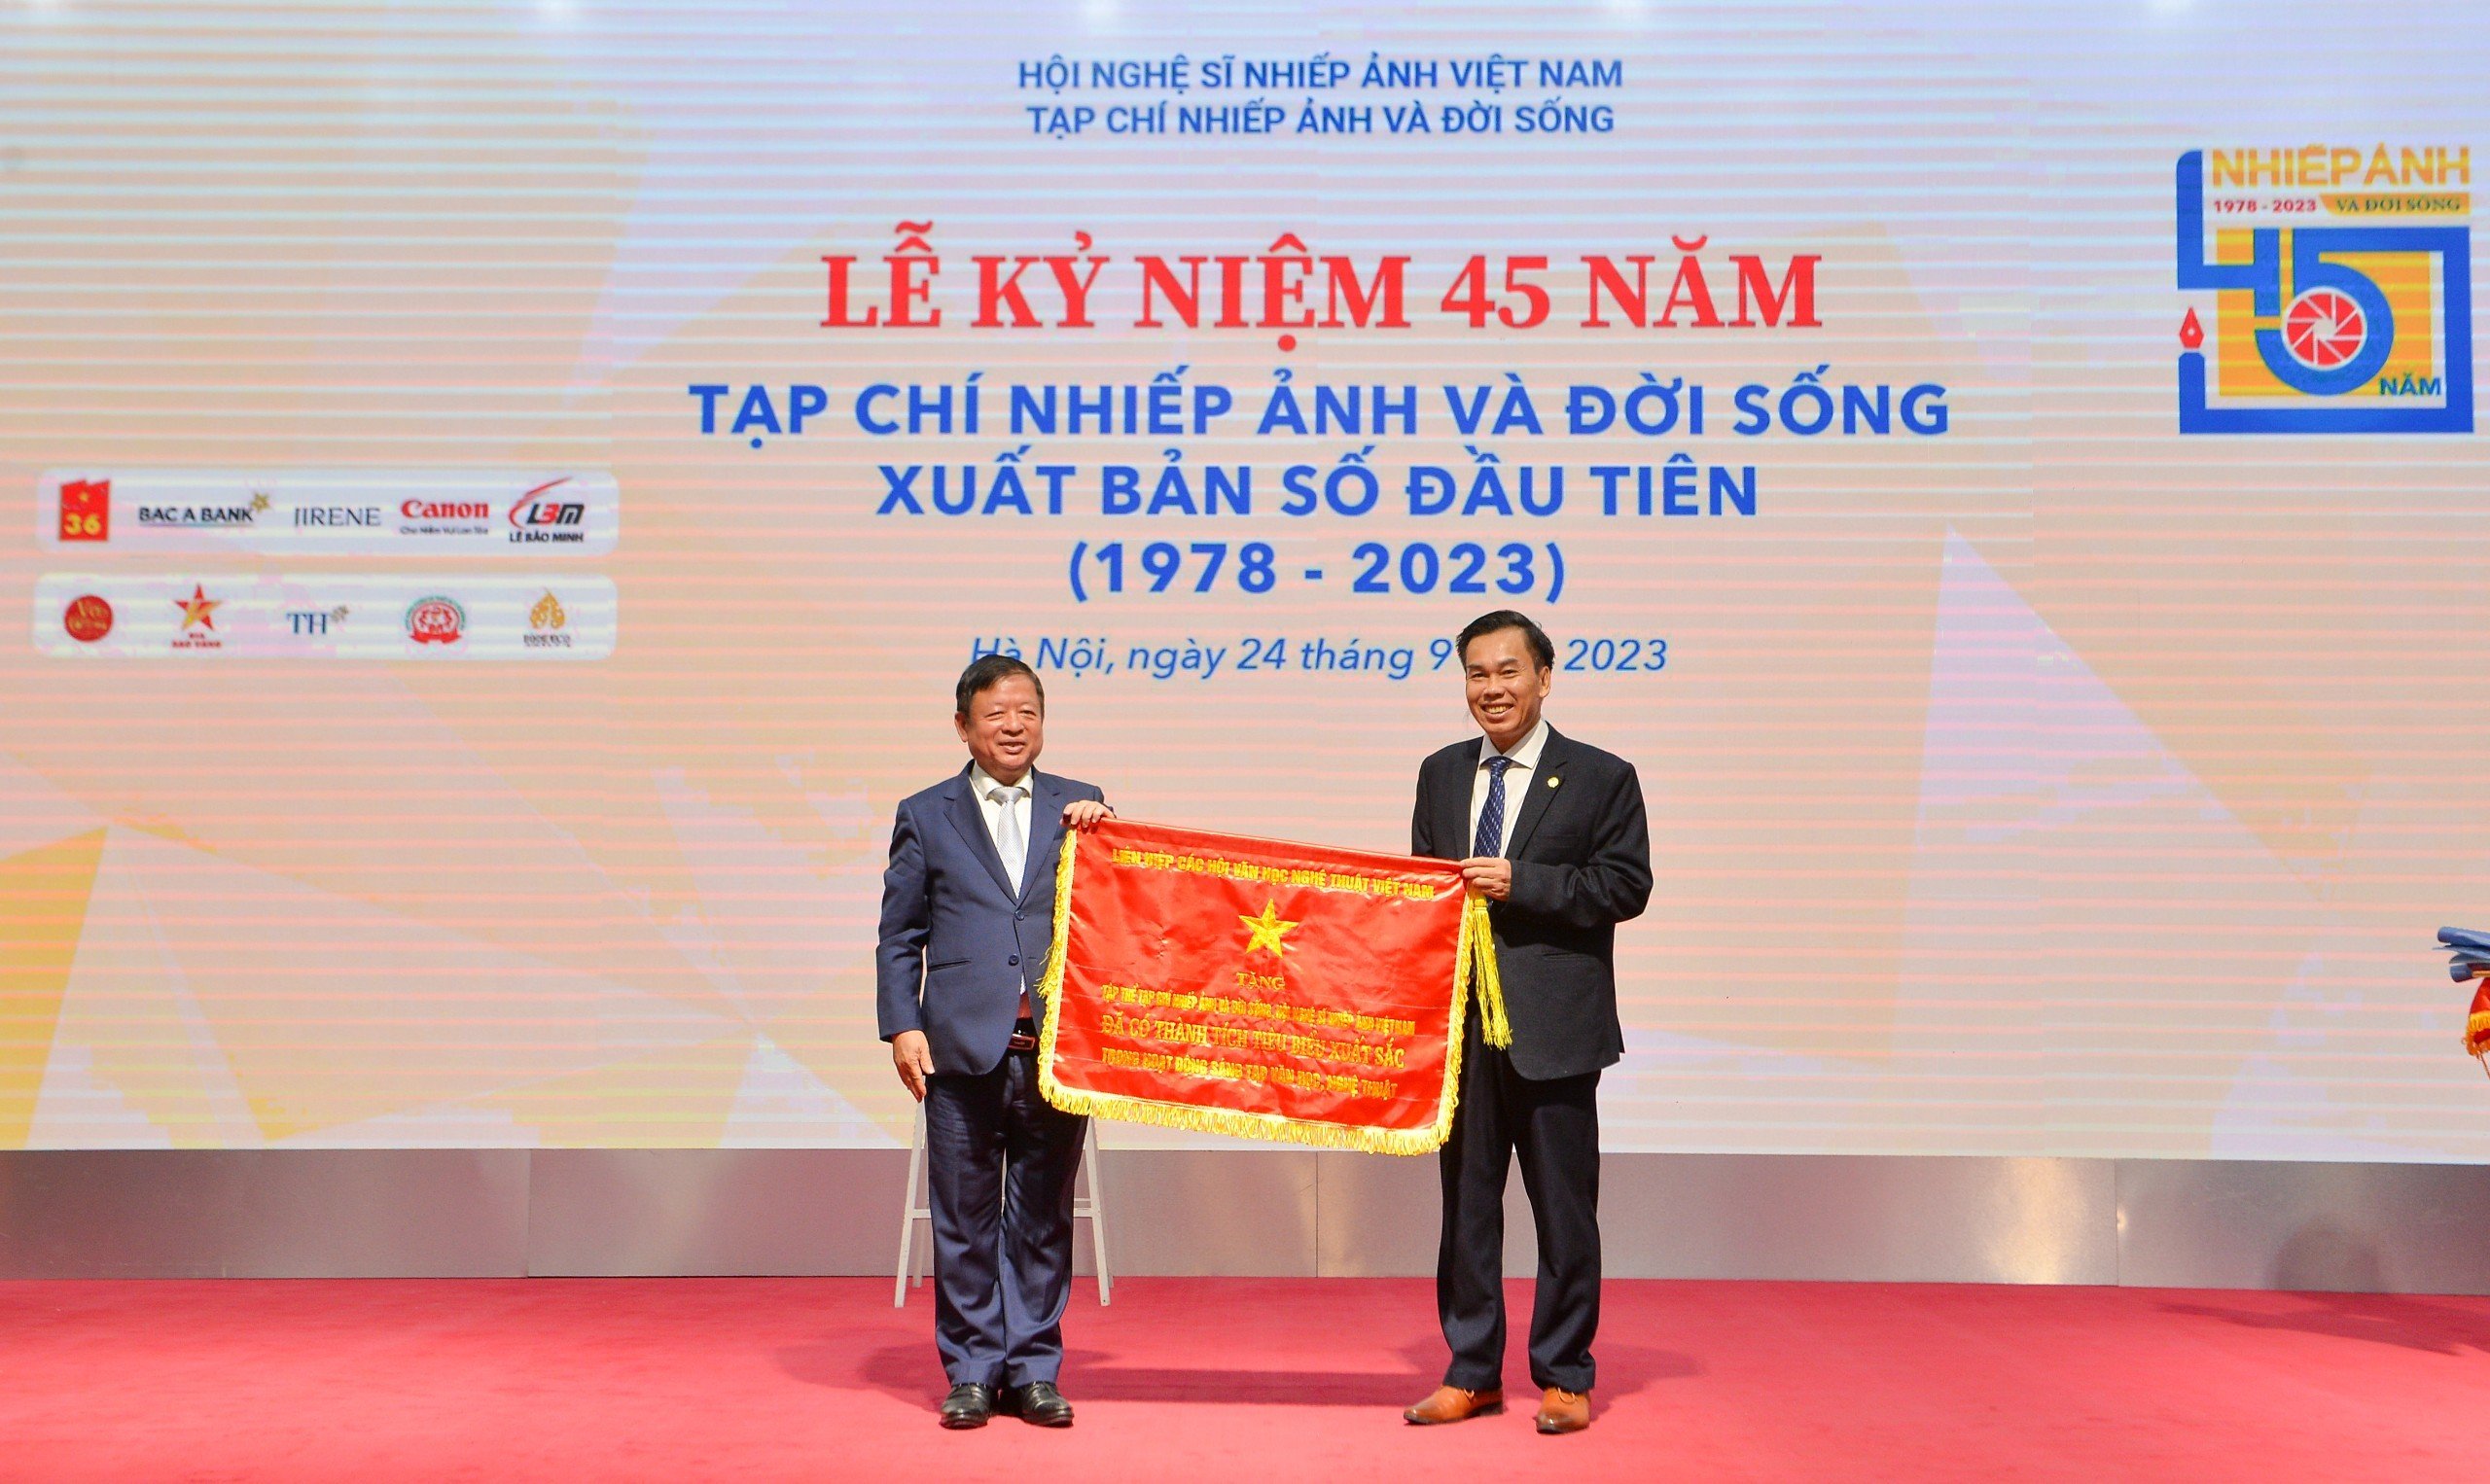 45 năm với sứ mệnh phản ánh sinh động các hoạt động nhiếp ảnh Việt Nam - 5